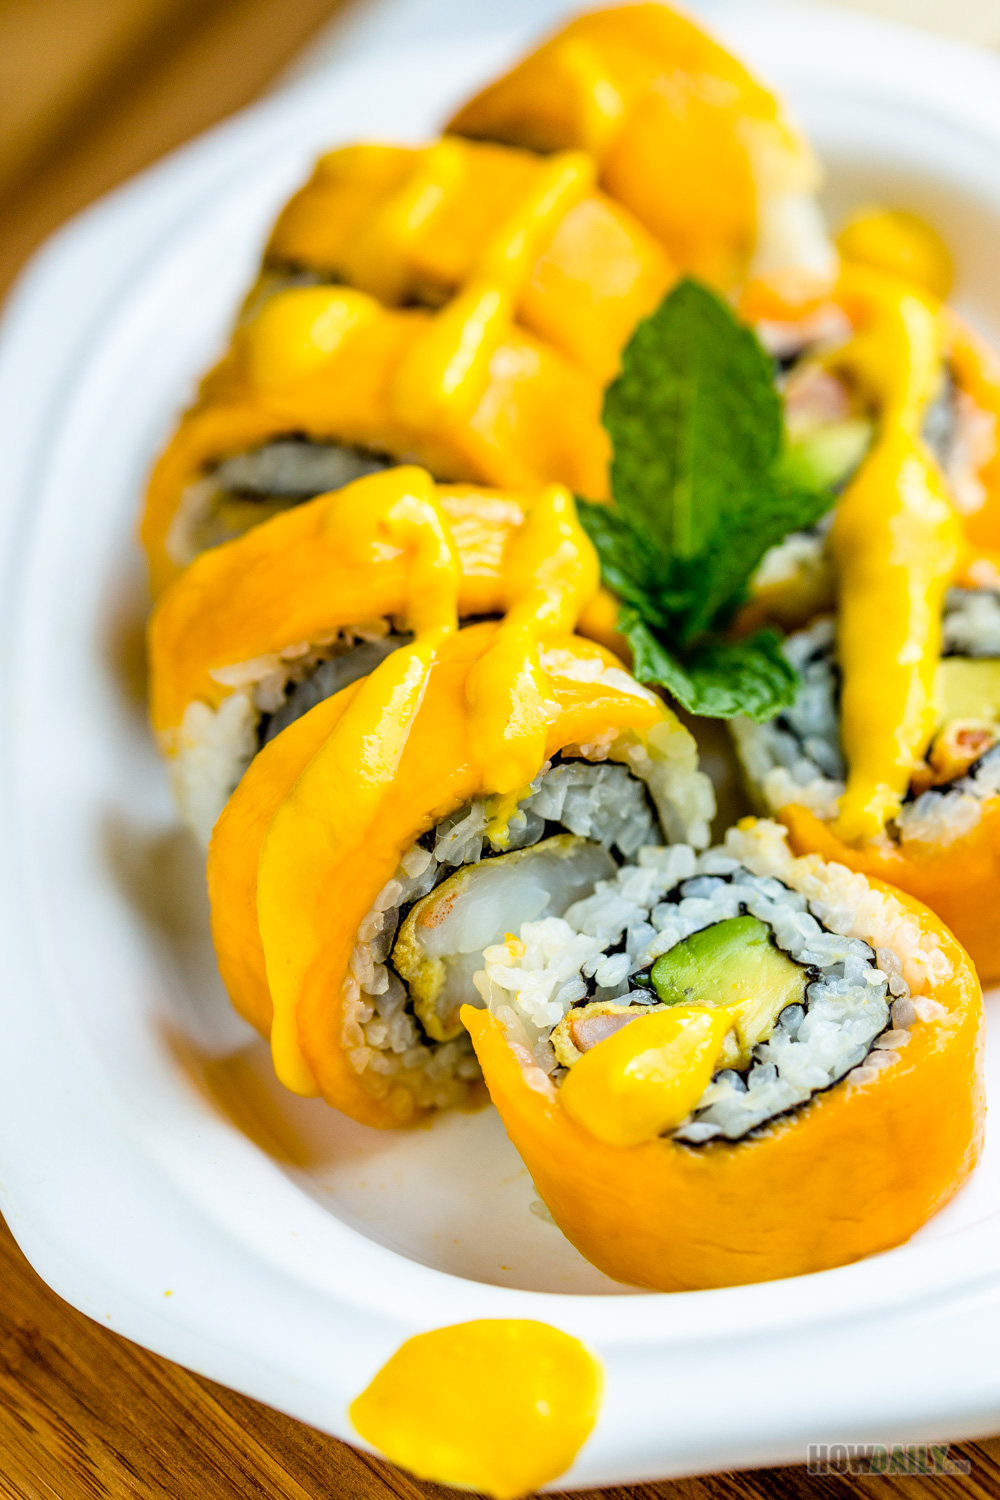 Crazy Mango Roll Recipe - Yummy Sushi with Tropical Mango